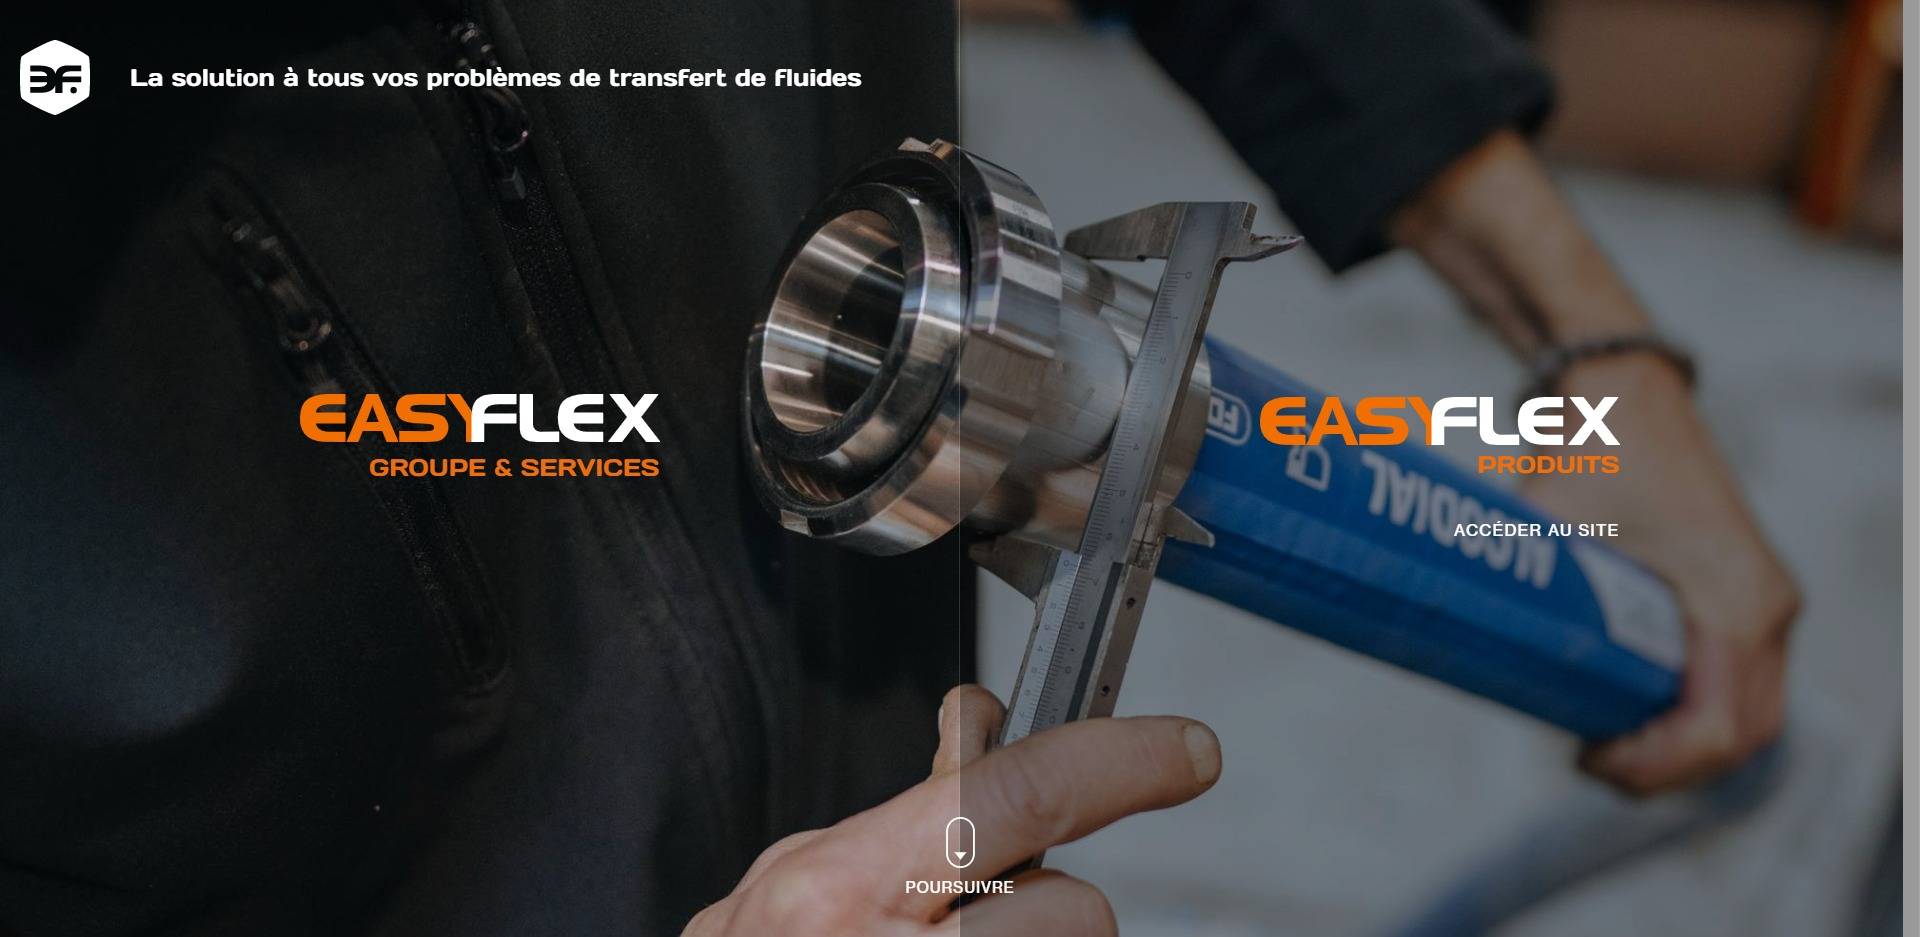 Quelle entreprise pour un dépannage rapide de tuyaux hydrauliques à Marseille ? - EasyFlex